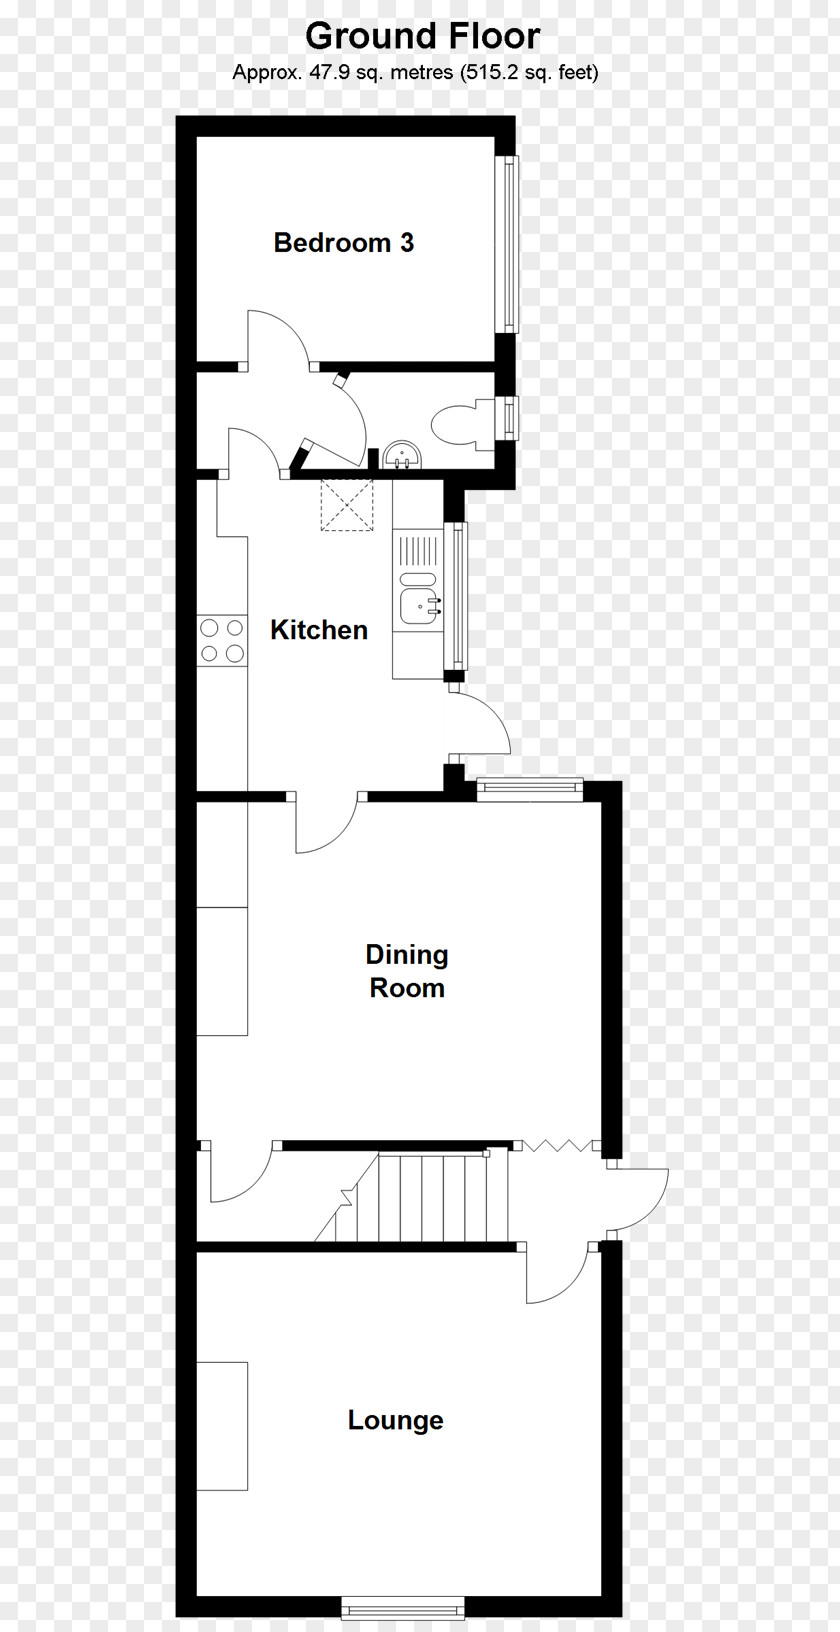 Lake Isle Of Wight Floor Plan Storey Terraced House Bedroom PNG